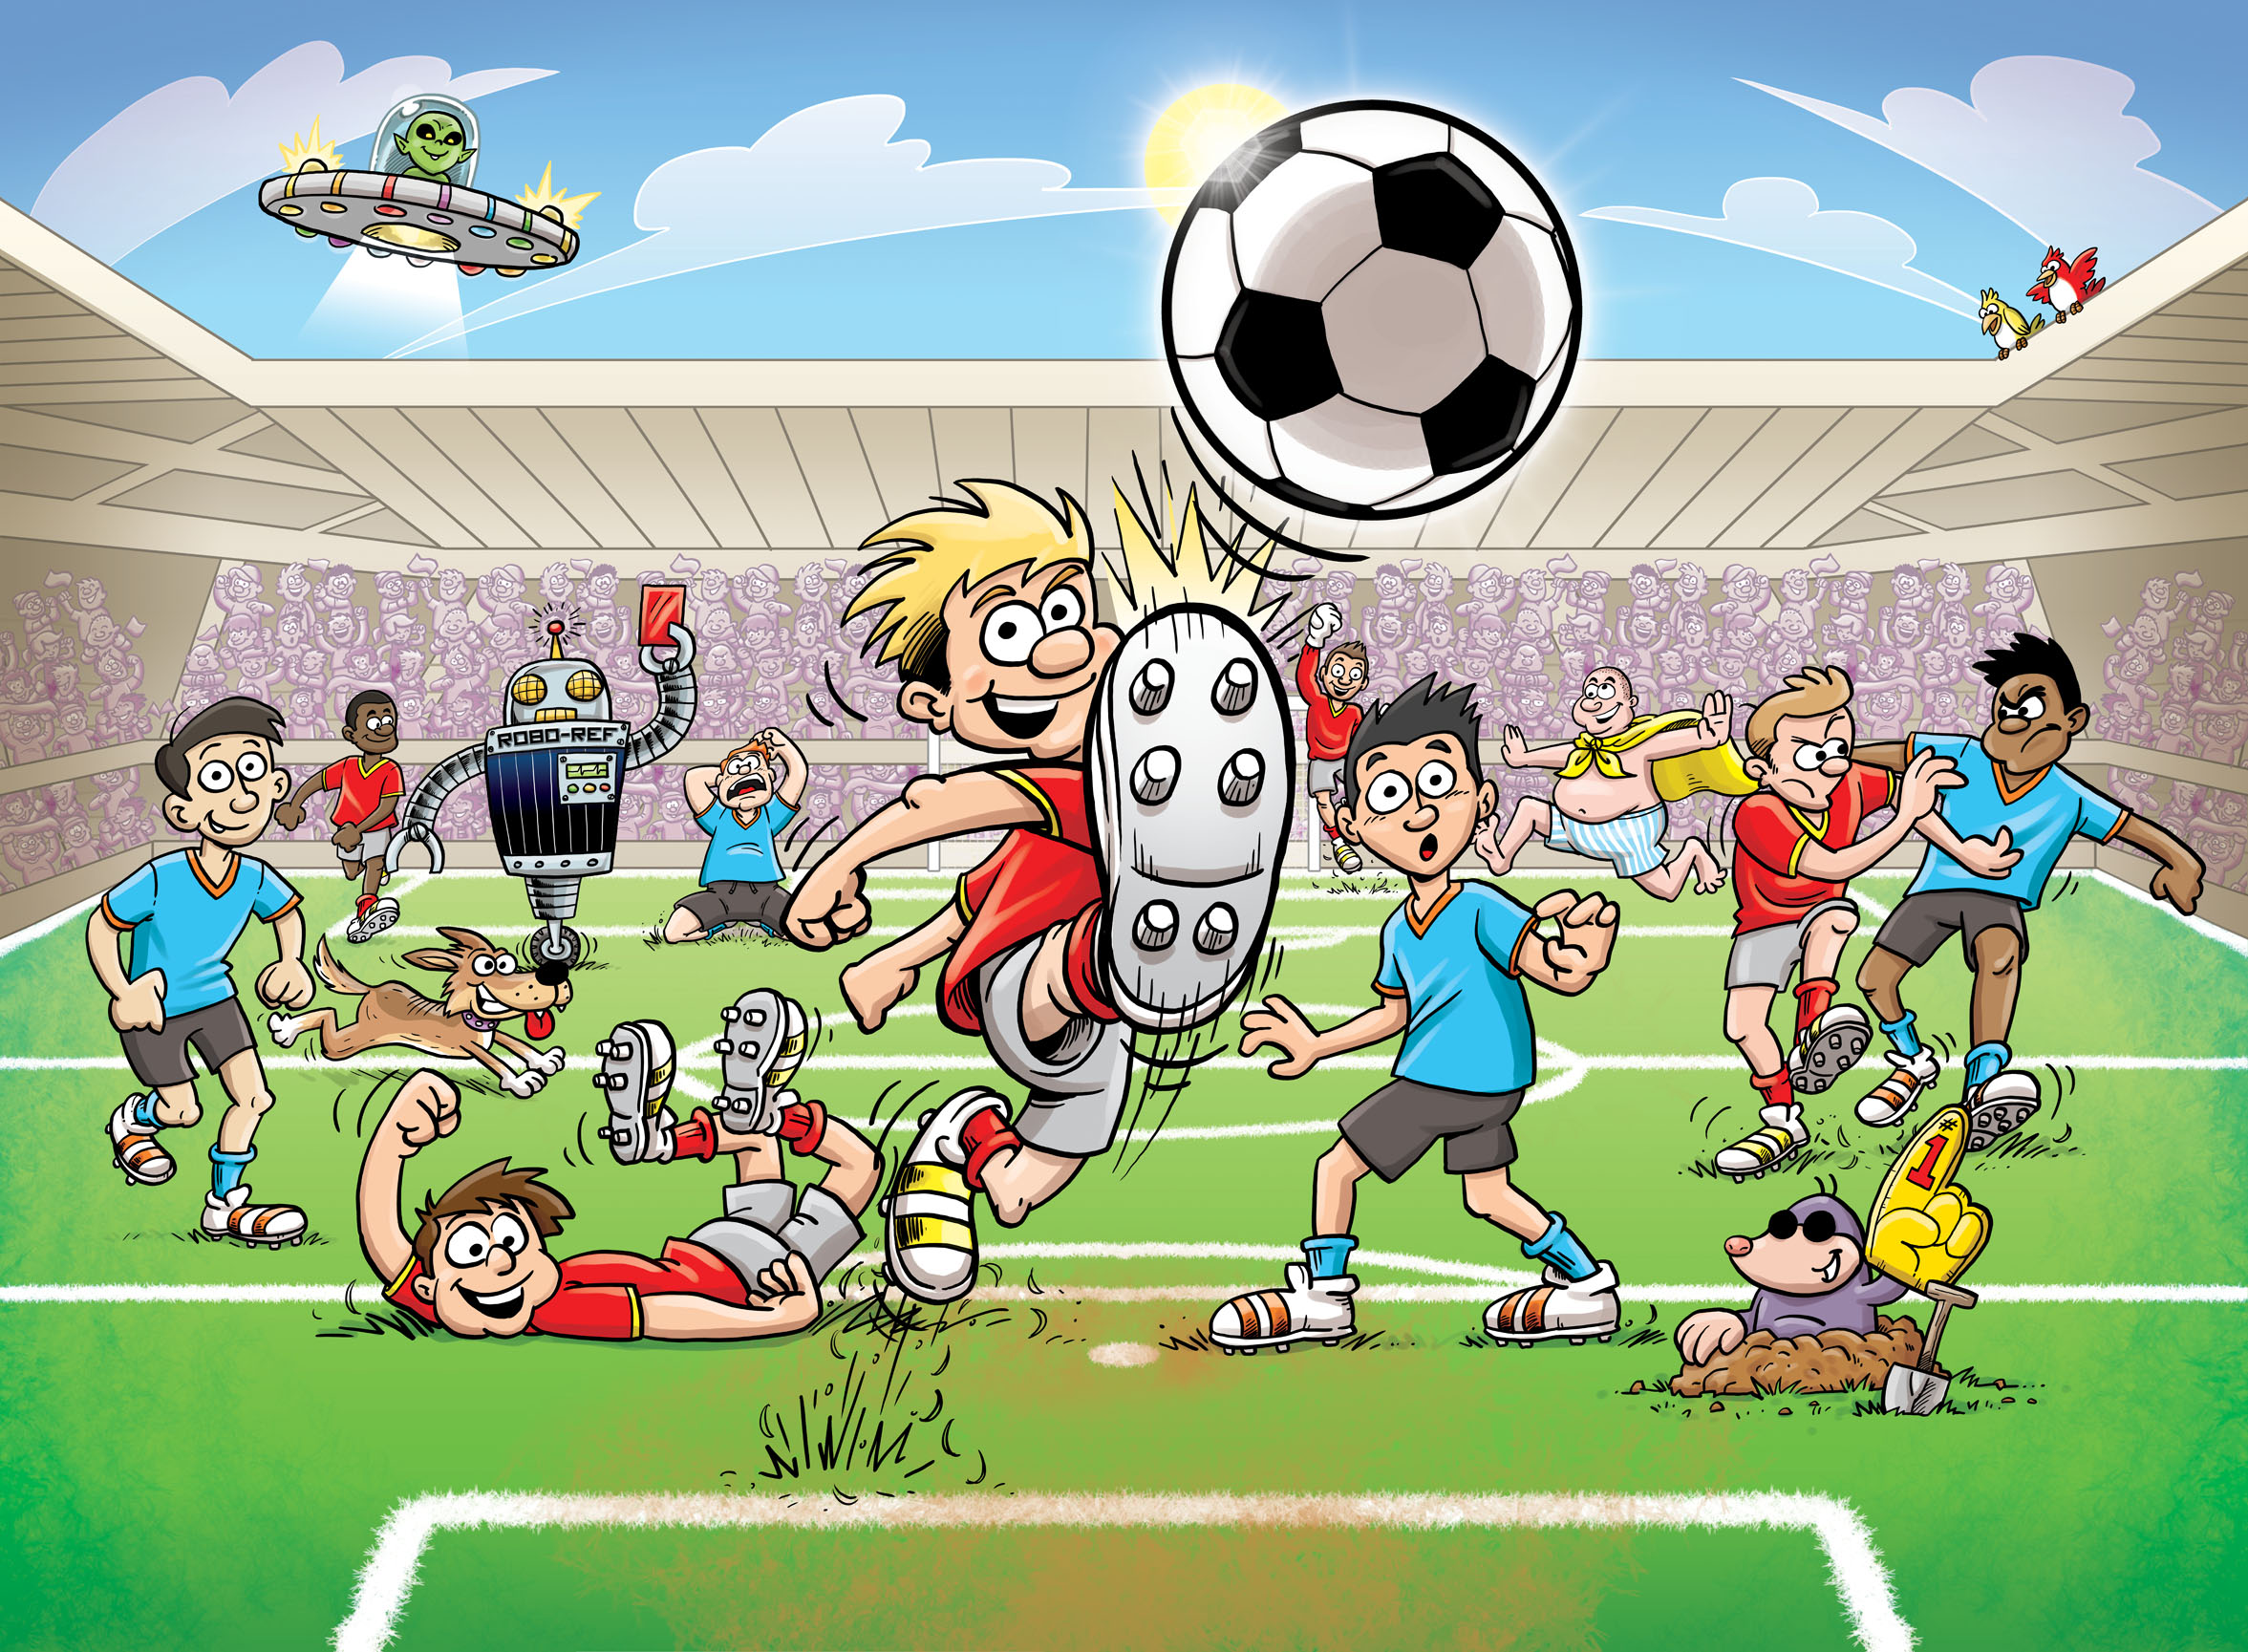 papel tapiz mural de fútbol,fútbol americano,dibujos animados,balón de fútbol,dibujos animados,jugador